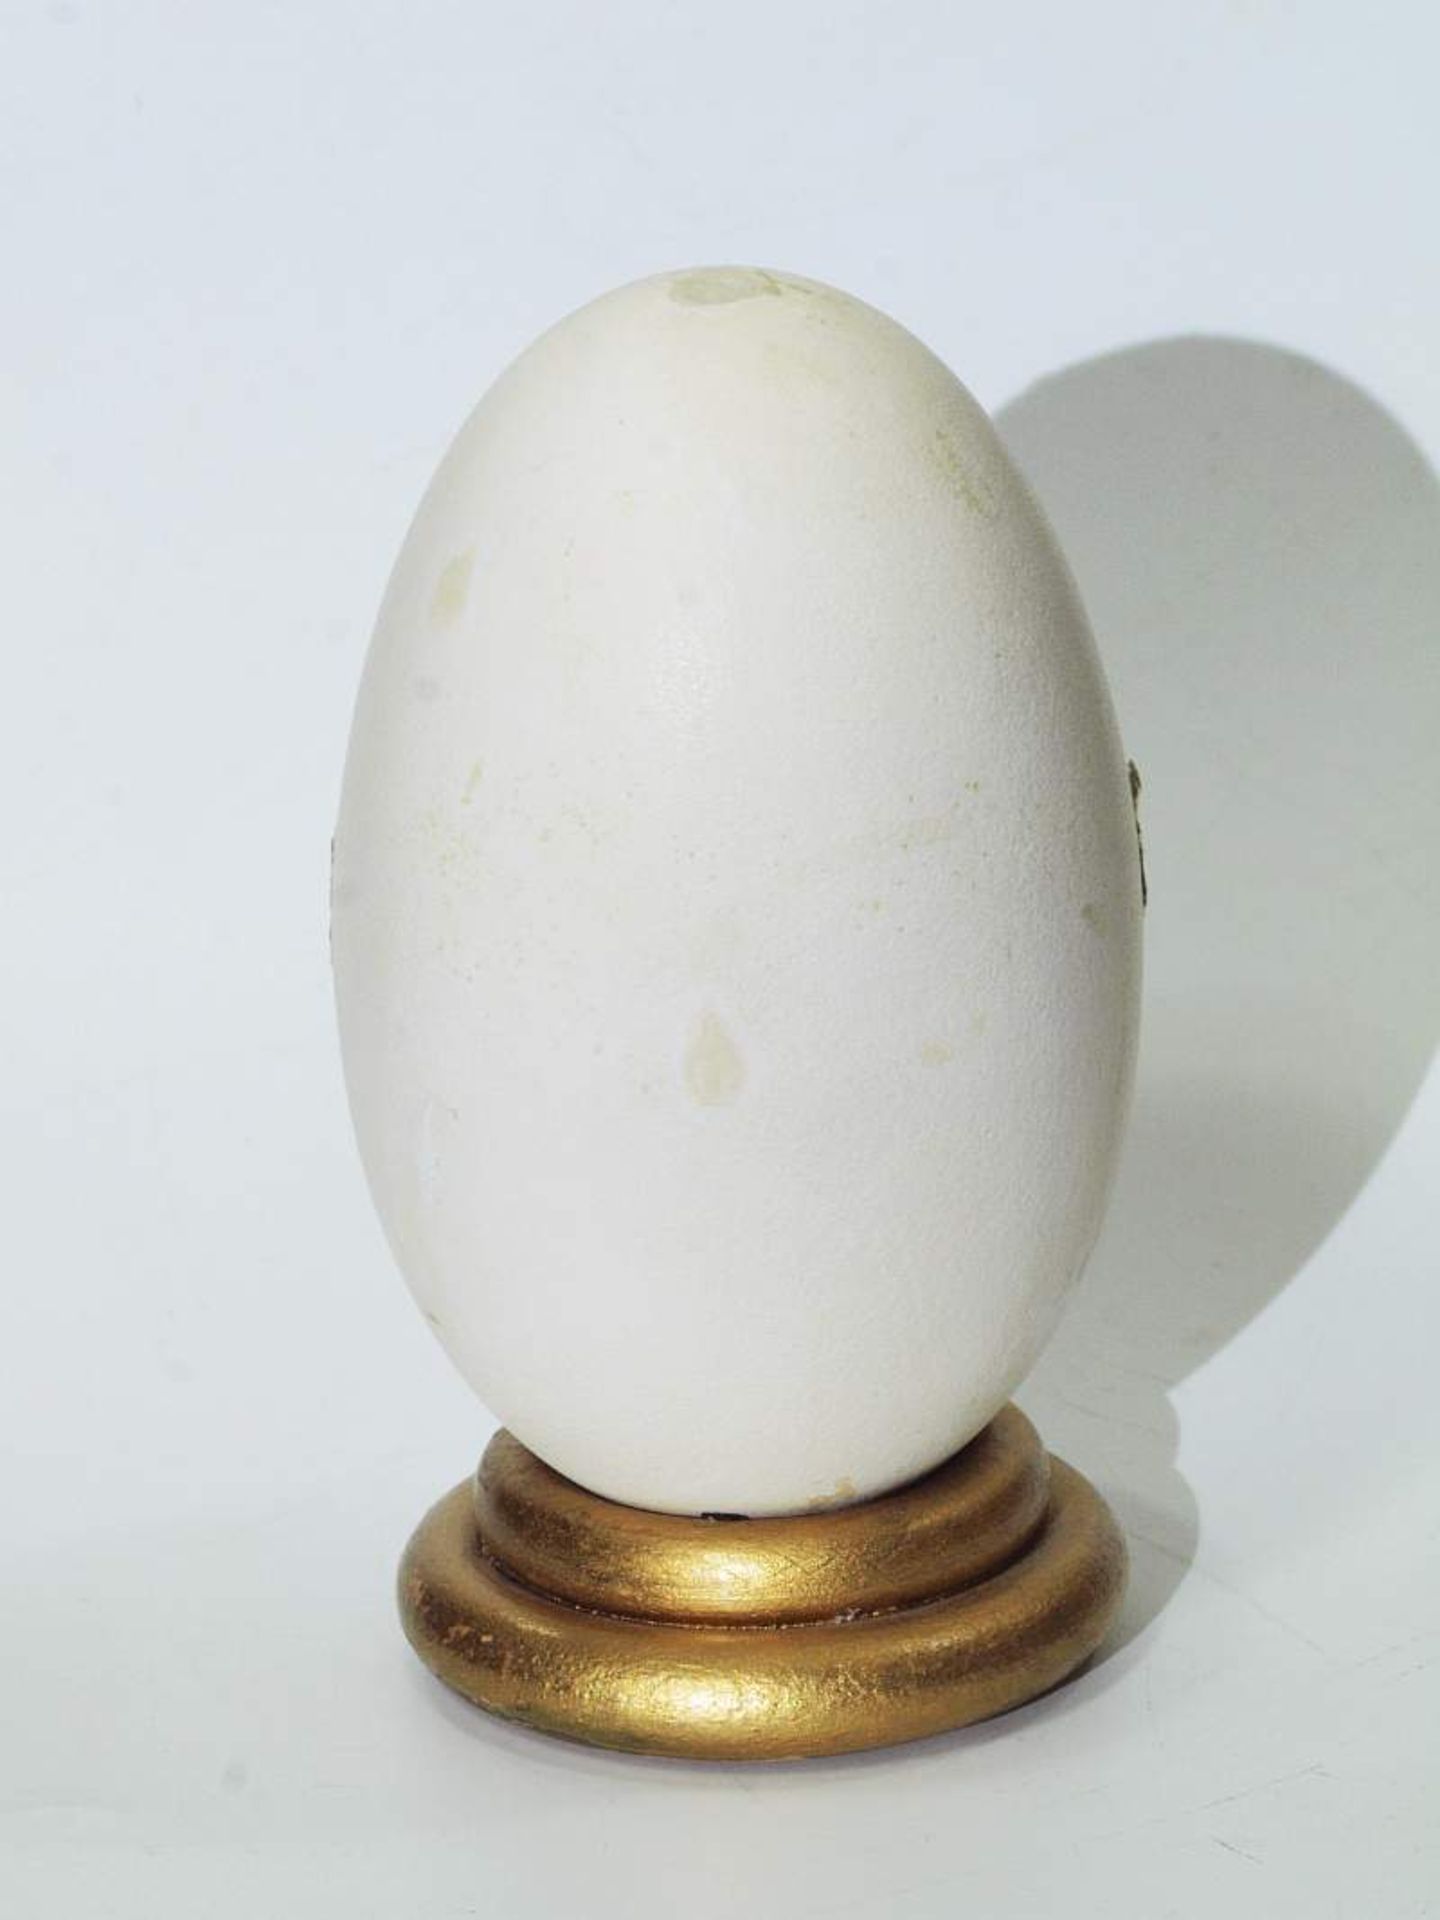 Krippenszene in Ei Krippenszene in Ei. 20. Jahrhundert. Vermutlich Gänseei als Krippe, dekoriert mit - Bild 6 aus 6